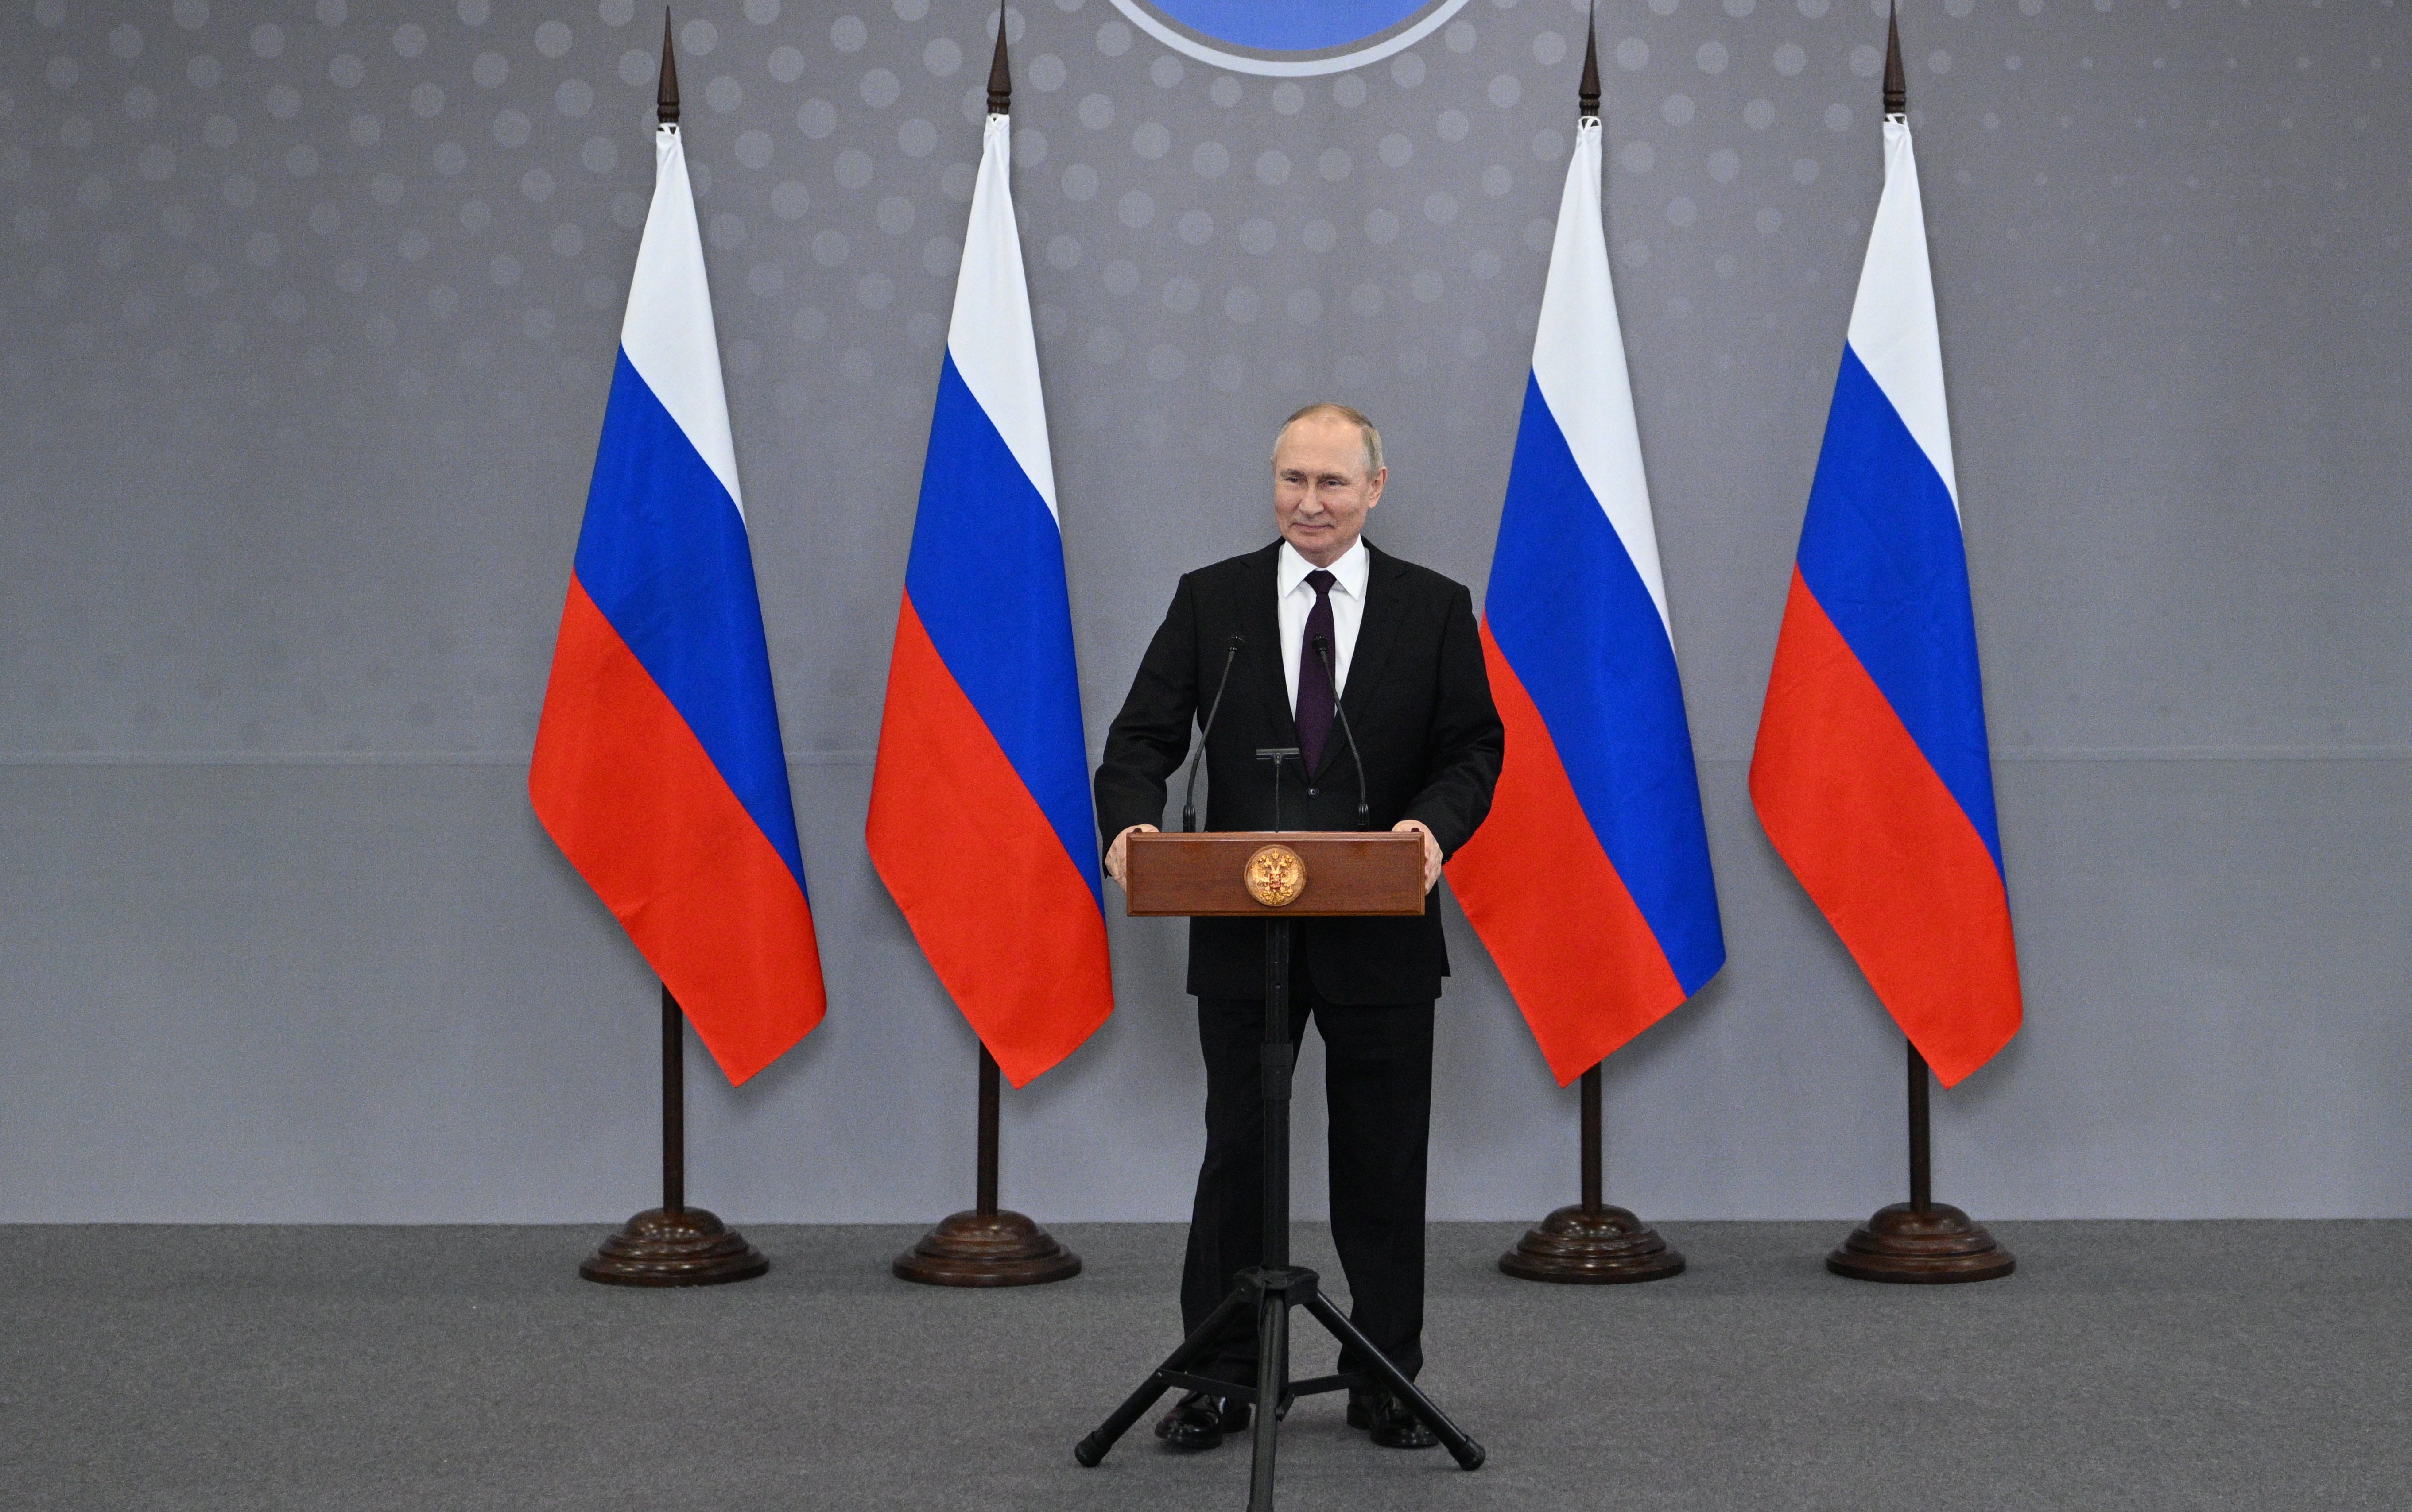 Tensiones en Asia Central y Putin señala a nuevos culpables (sin escrúpulos)